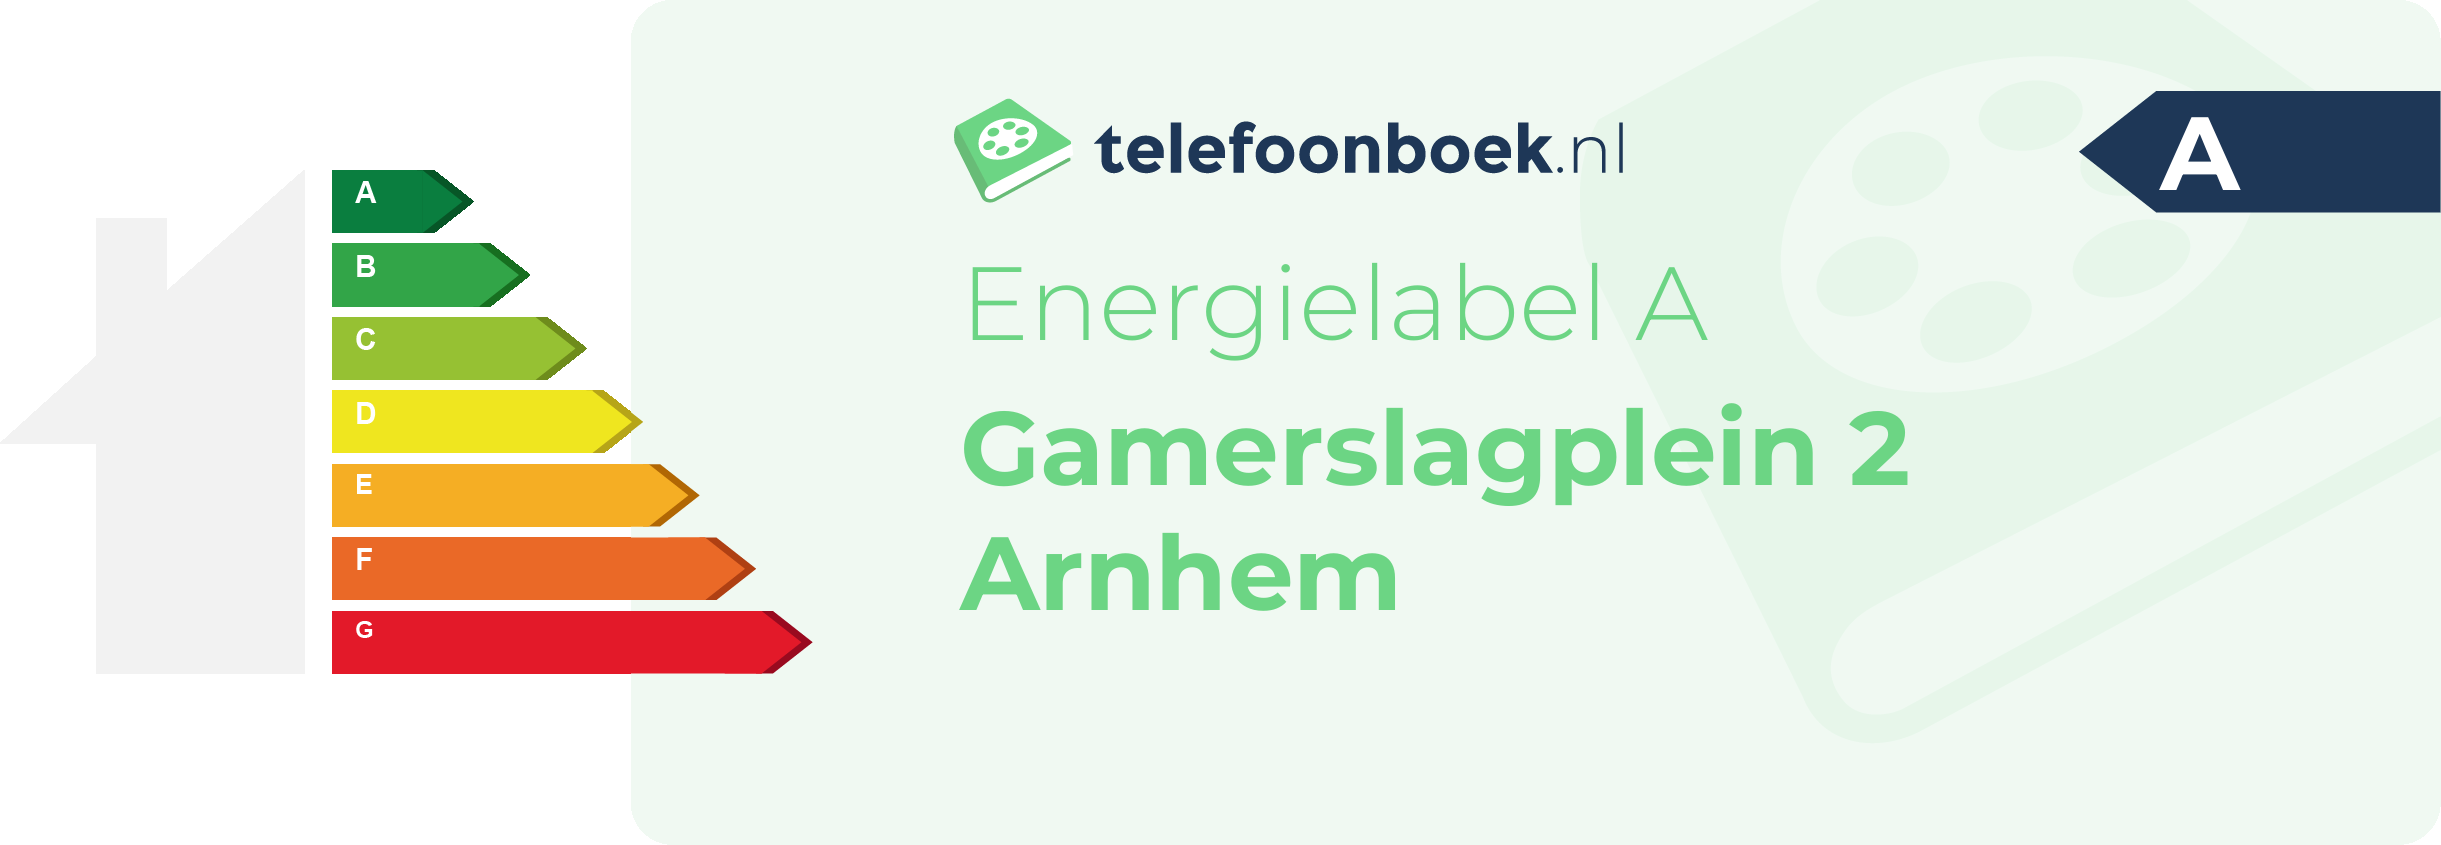 Energielabel Gamerslagplein 2 Arnhem